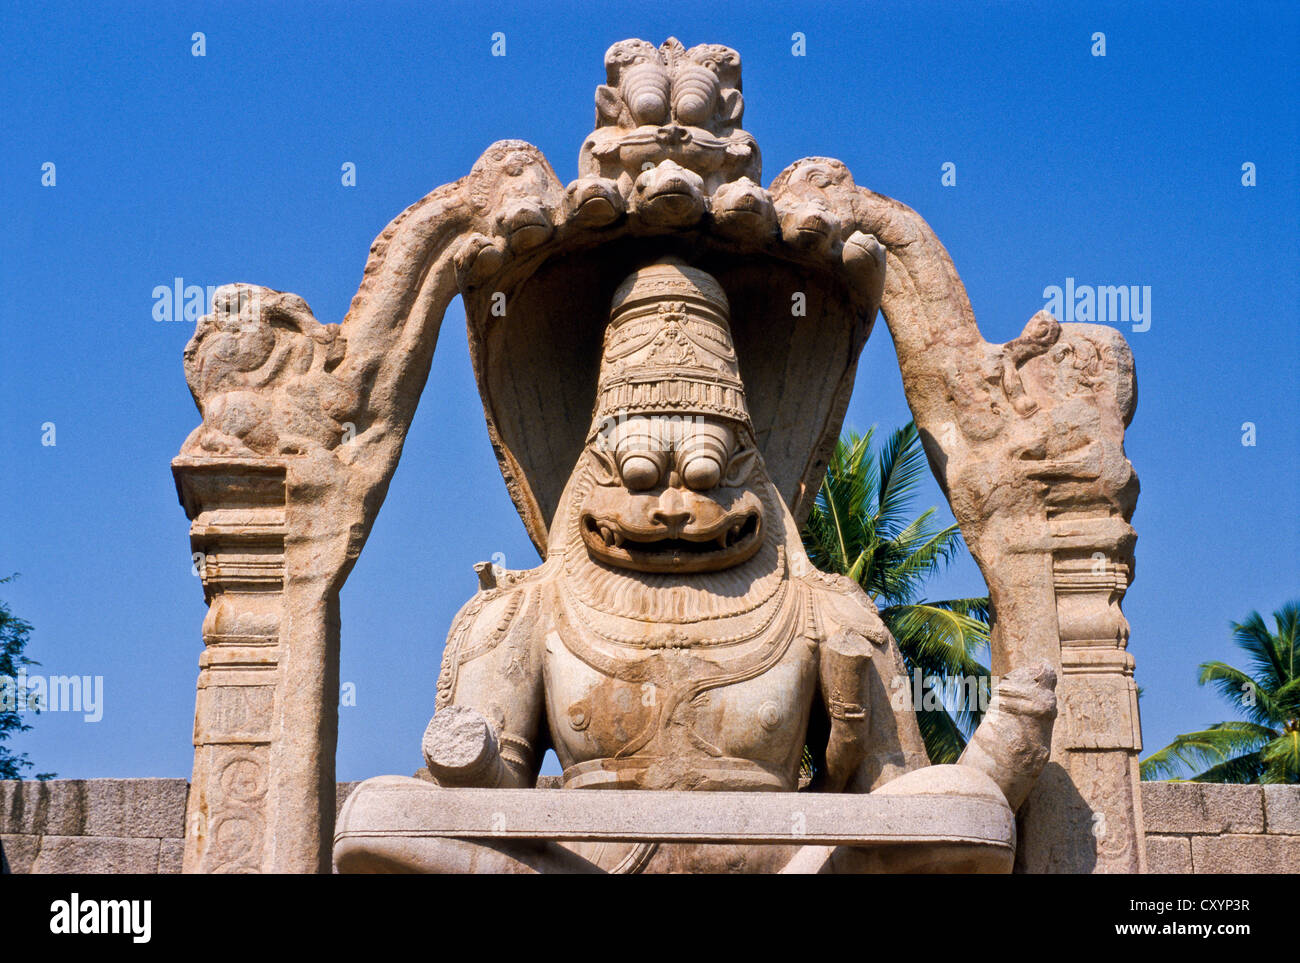 Statua di Lakshmi Narasimha nelle rovine del vecchio regno di Vijayanagar, Hampi Karnataka, India, Asia Foto Stock